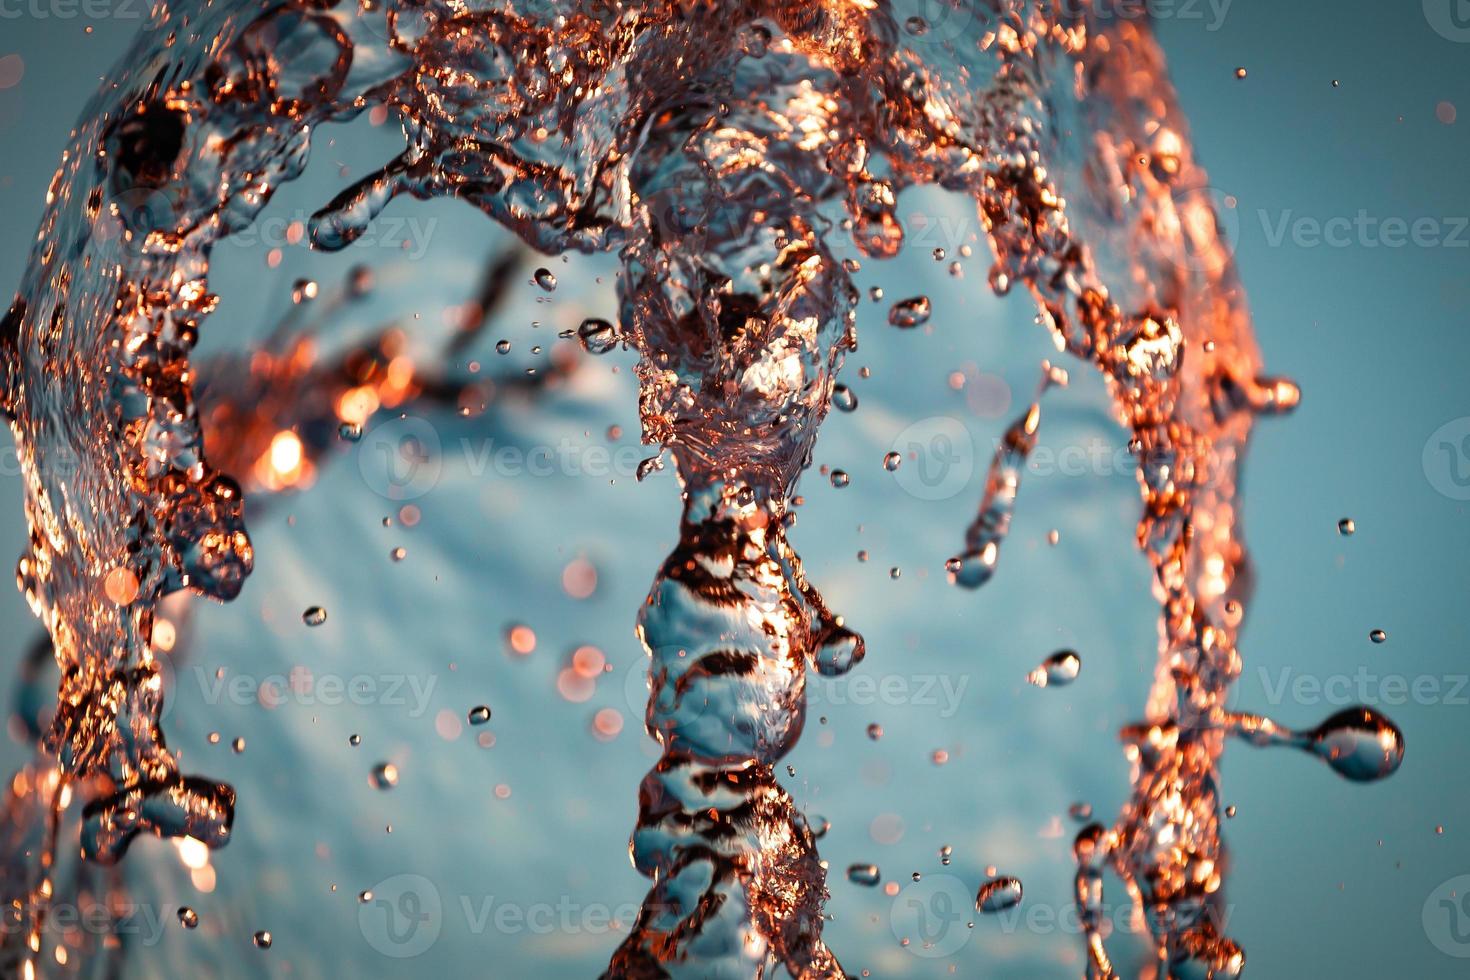 chorros de agua con muchas gotas y burbujas bajo los rayos del sol sobre un fondo azul. un gran plan la textura de las ondas de agua de una gran fuente foto